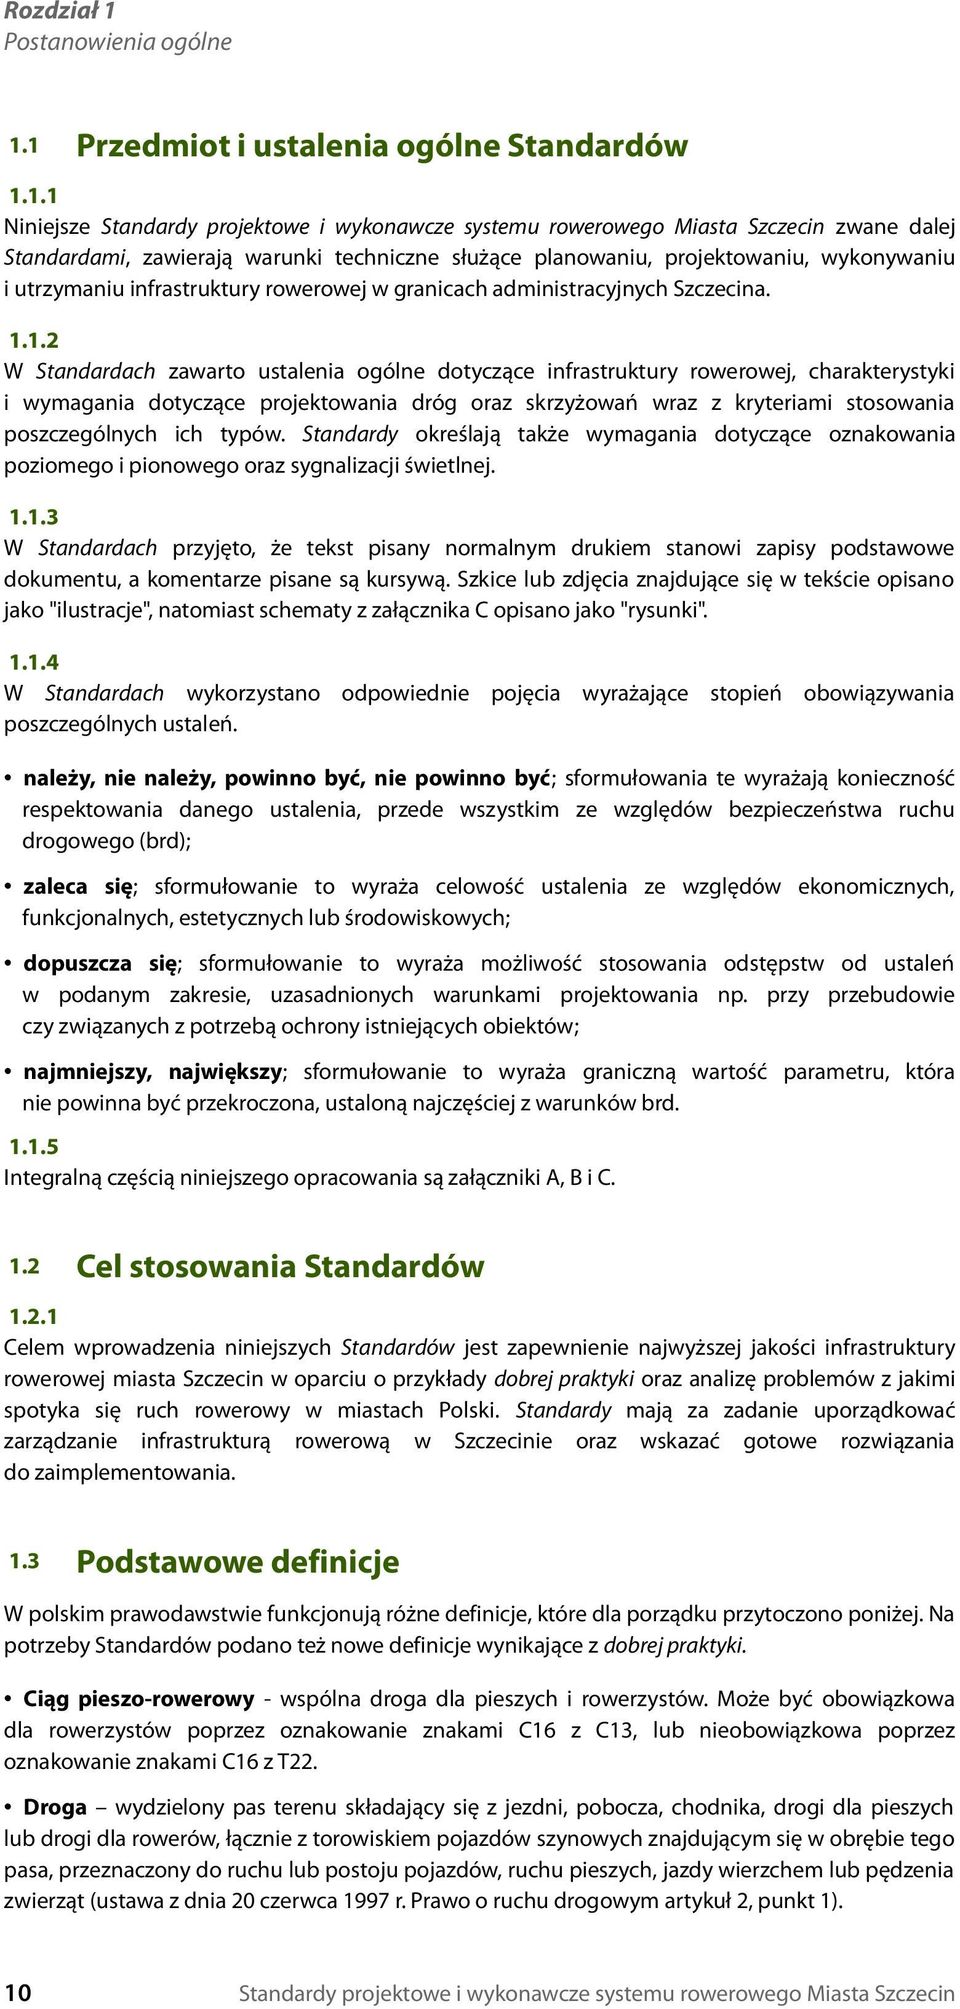 1 Przedmiot i ustalenia ogólne Standardów 1.1.1 Niniejsze Standardy projektowe i wykonawcze systemu rowerowego Miasta Szczecin zwane dalej Standardami, zawierają warunki techniczne służące